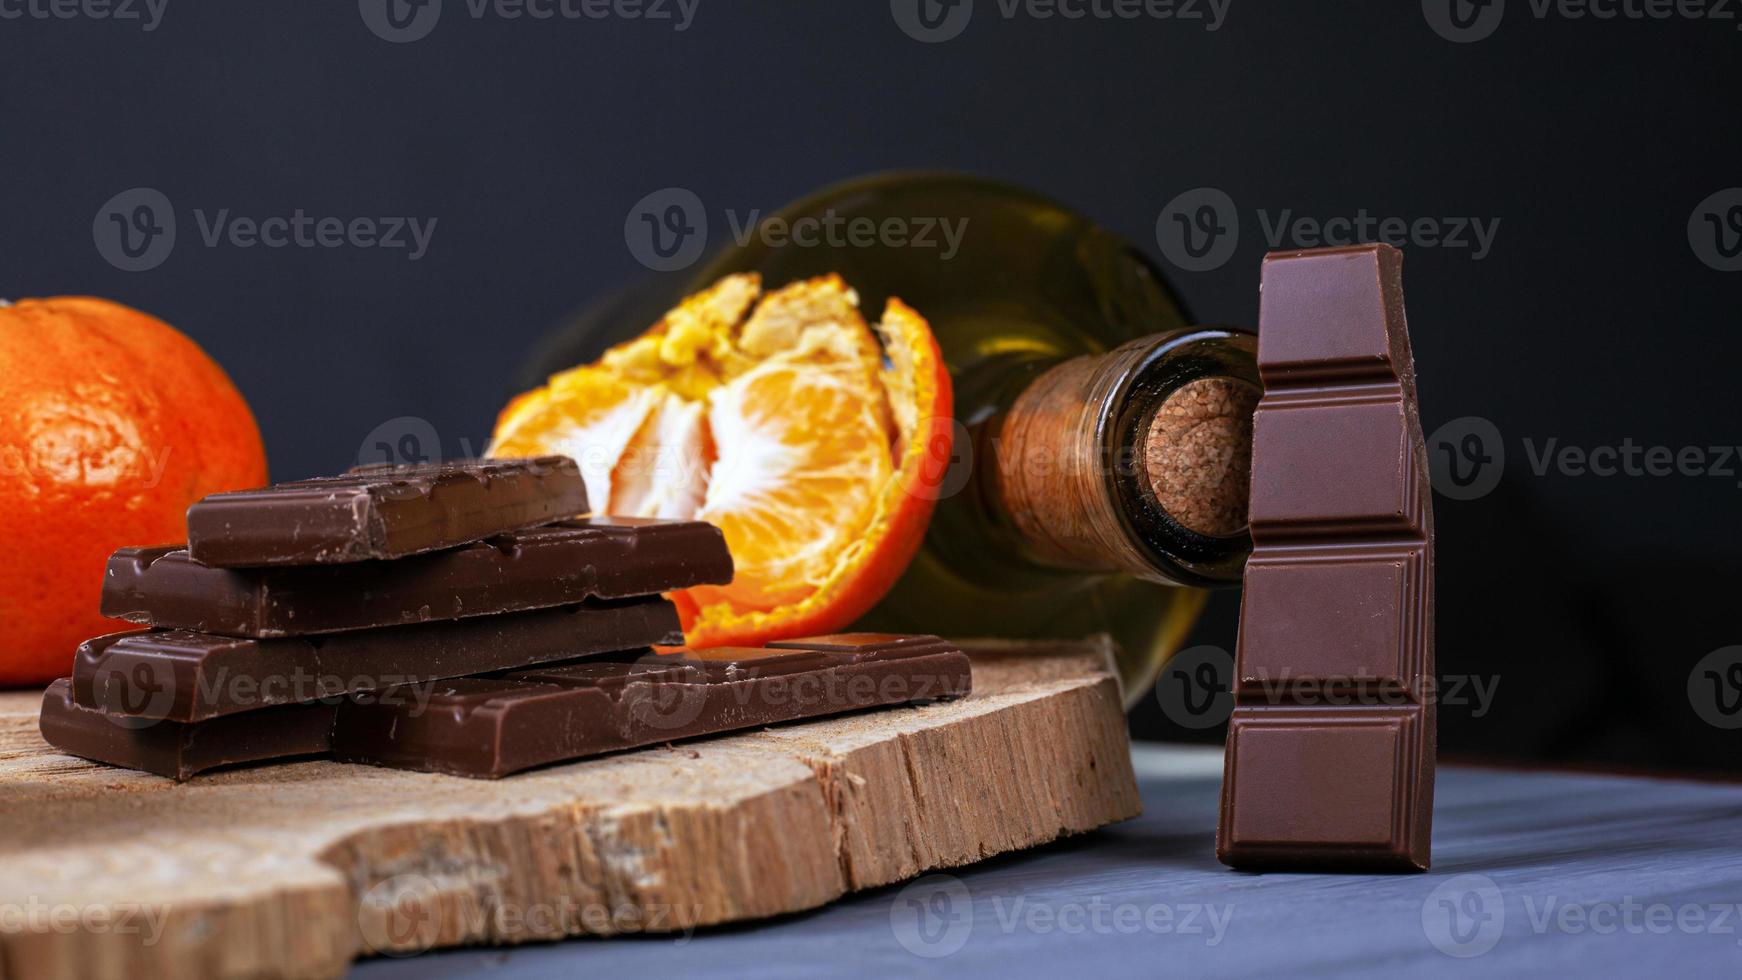 pedaços de chocolate, tangerinas e uma garrafa de vinho em um prato de madeira foto